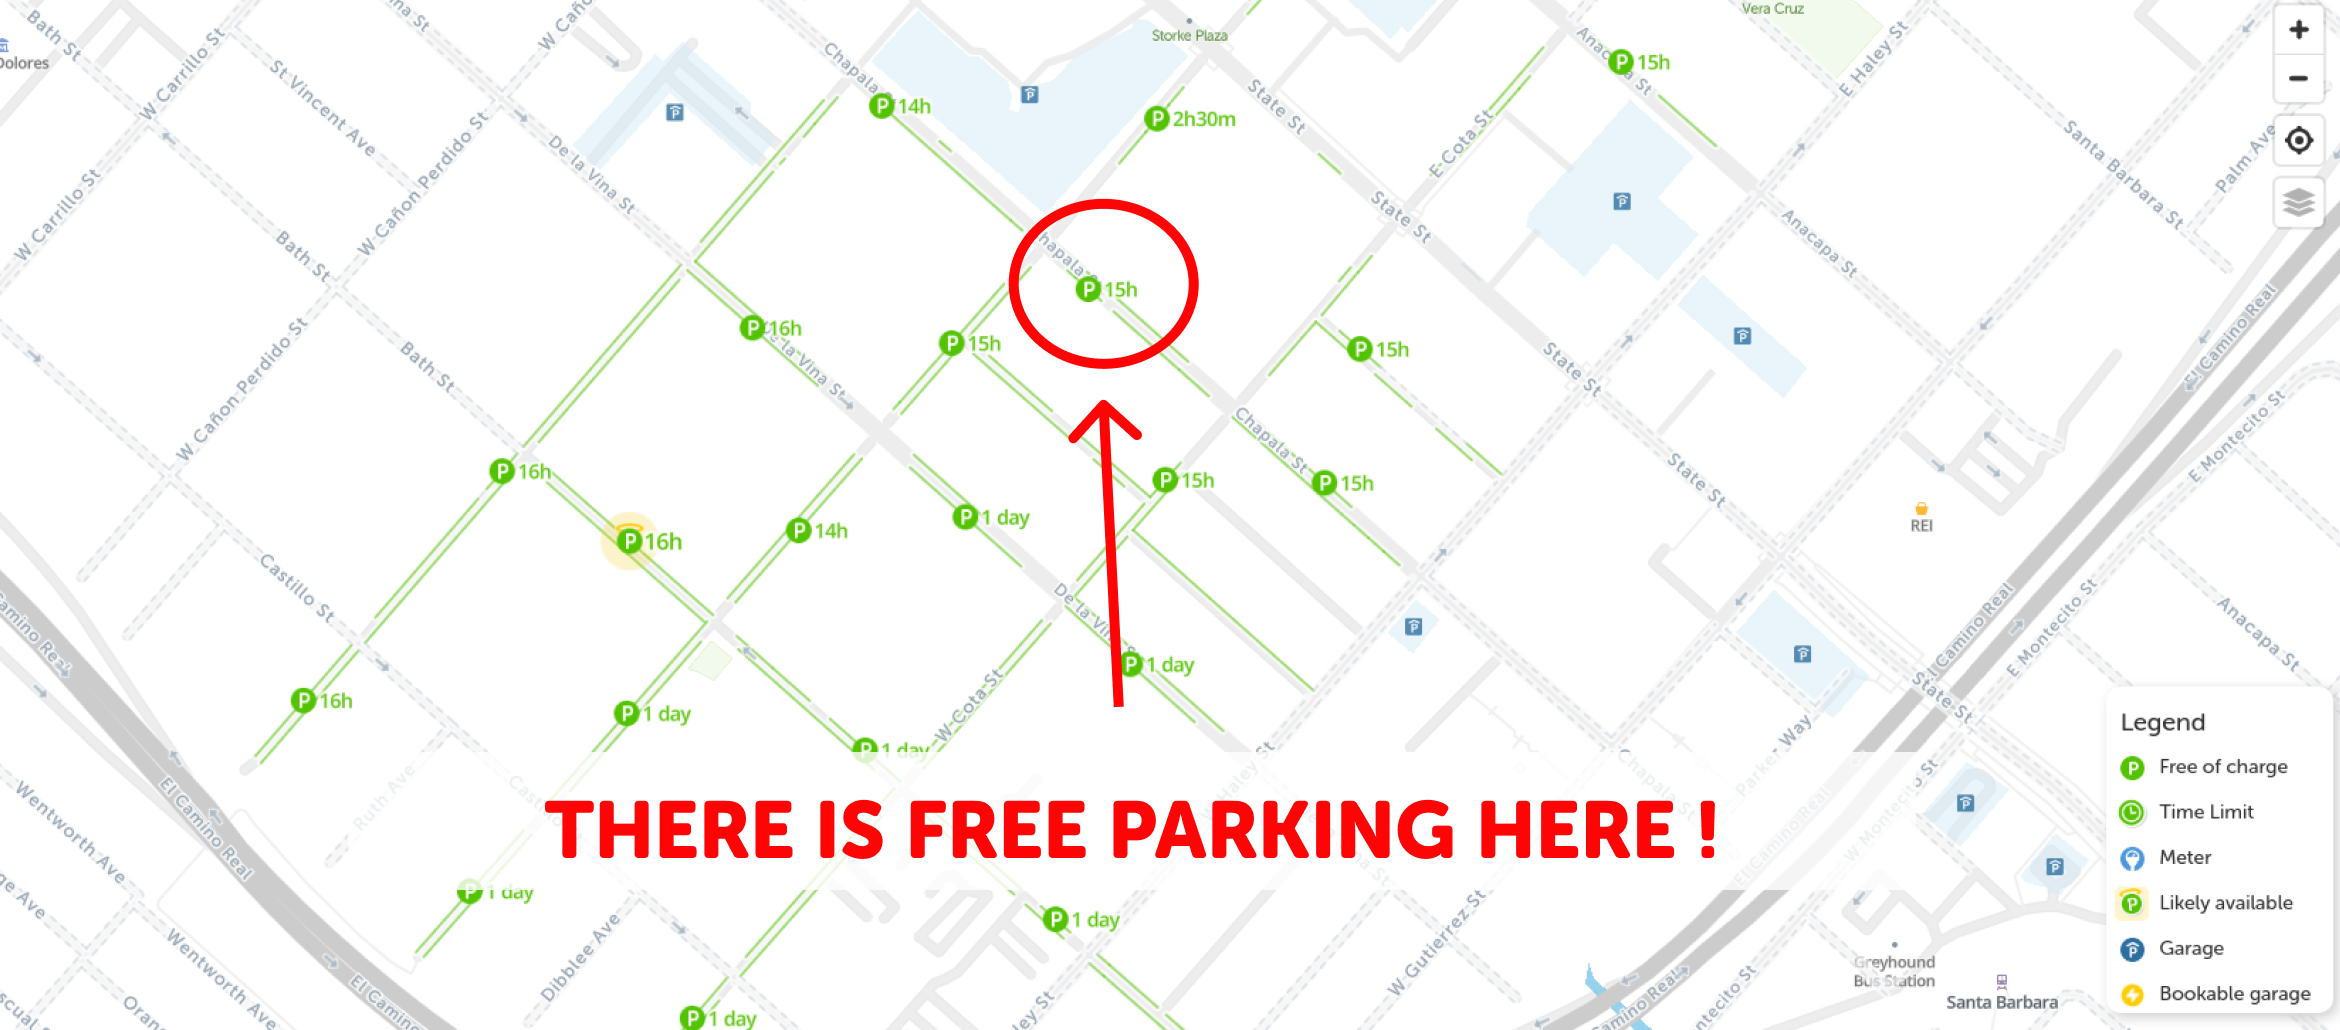 map of free parking in Santa barbara - SpotAngels